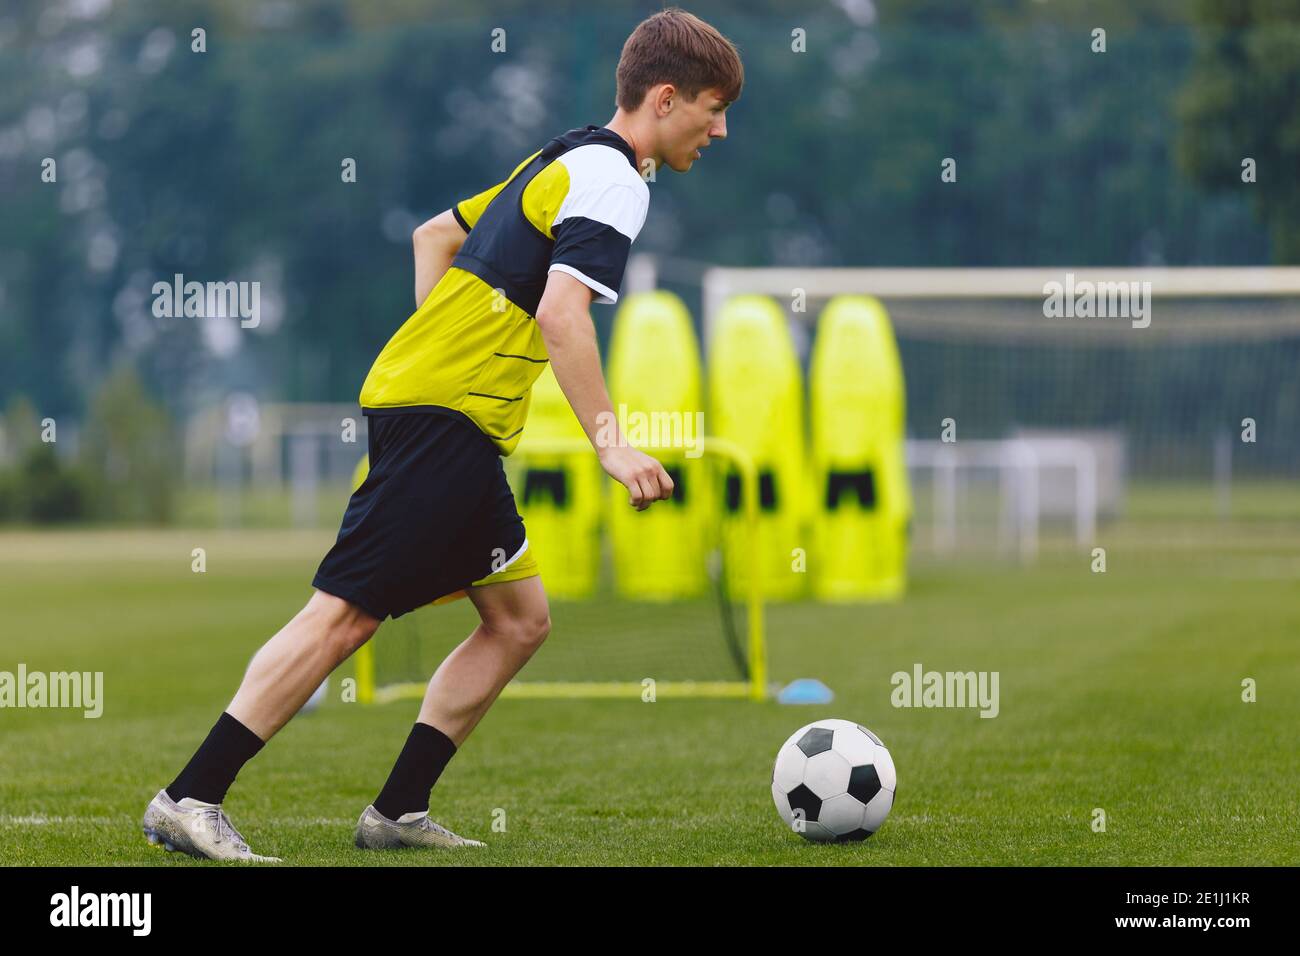 Boys Running Soccer Ball en el lugar de entrenamiento. Deportista joven practicando fútbol en campo de hierba. Fútbol Wall Mannequin set y meta de entrenamiento en la espalda Foto de stock